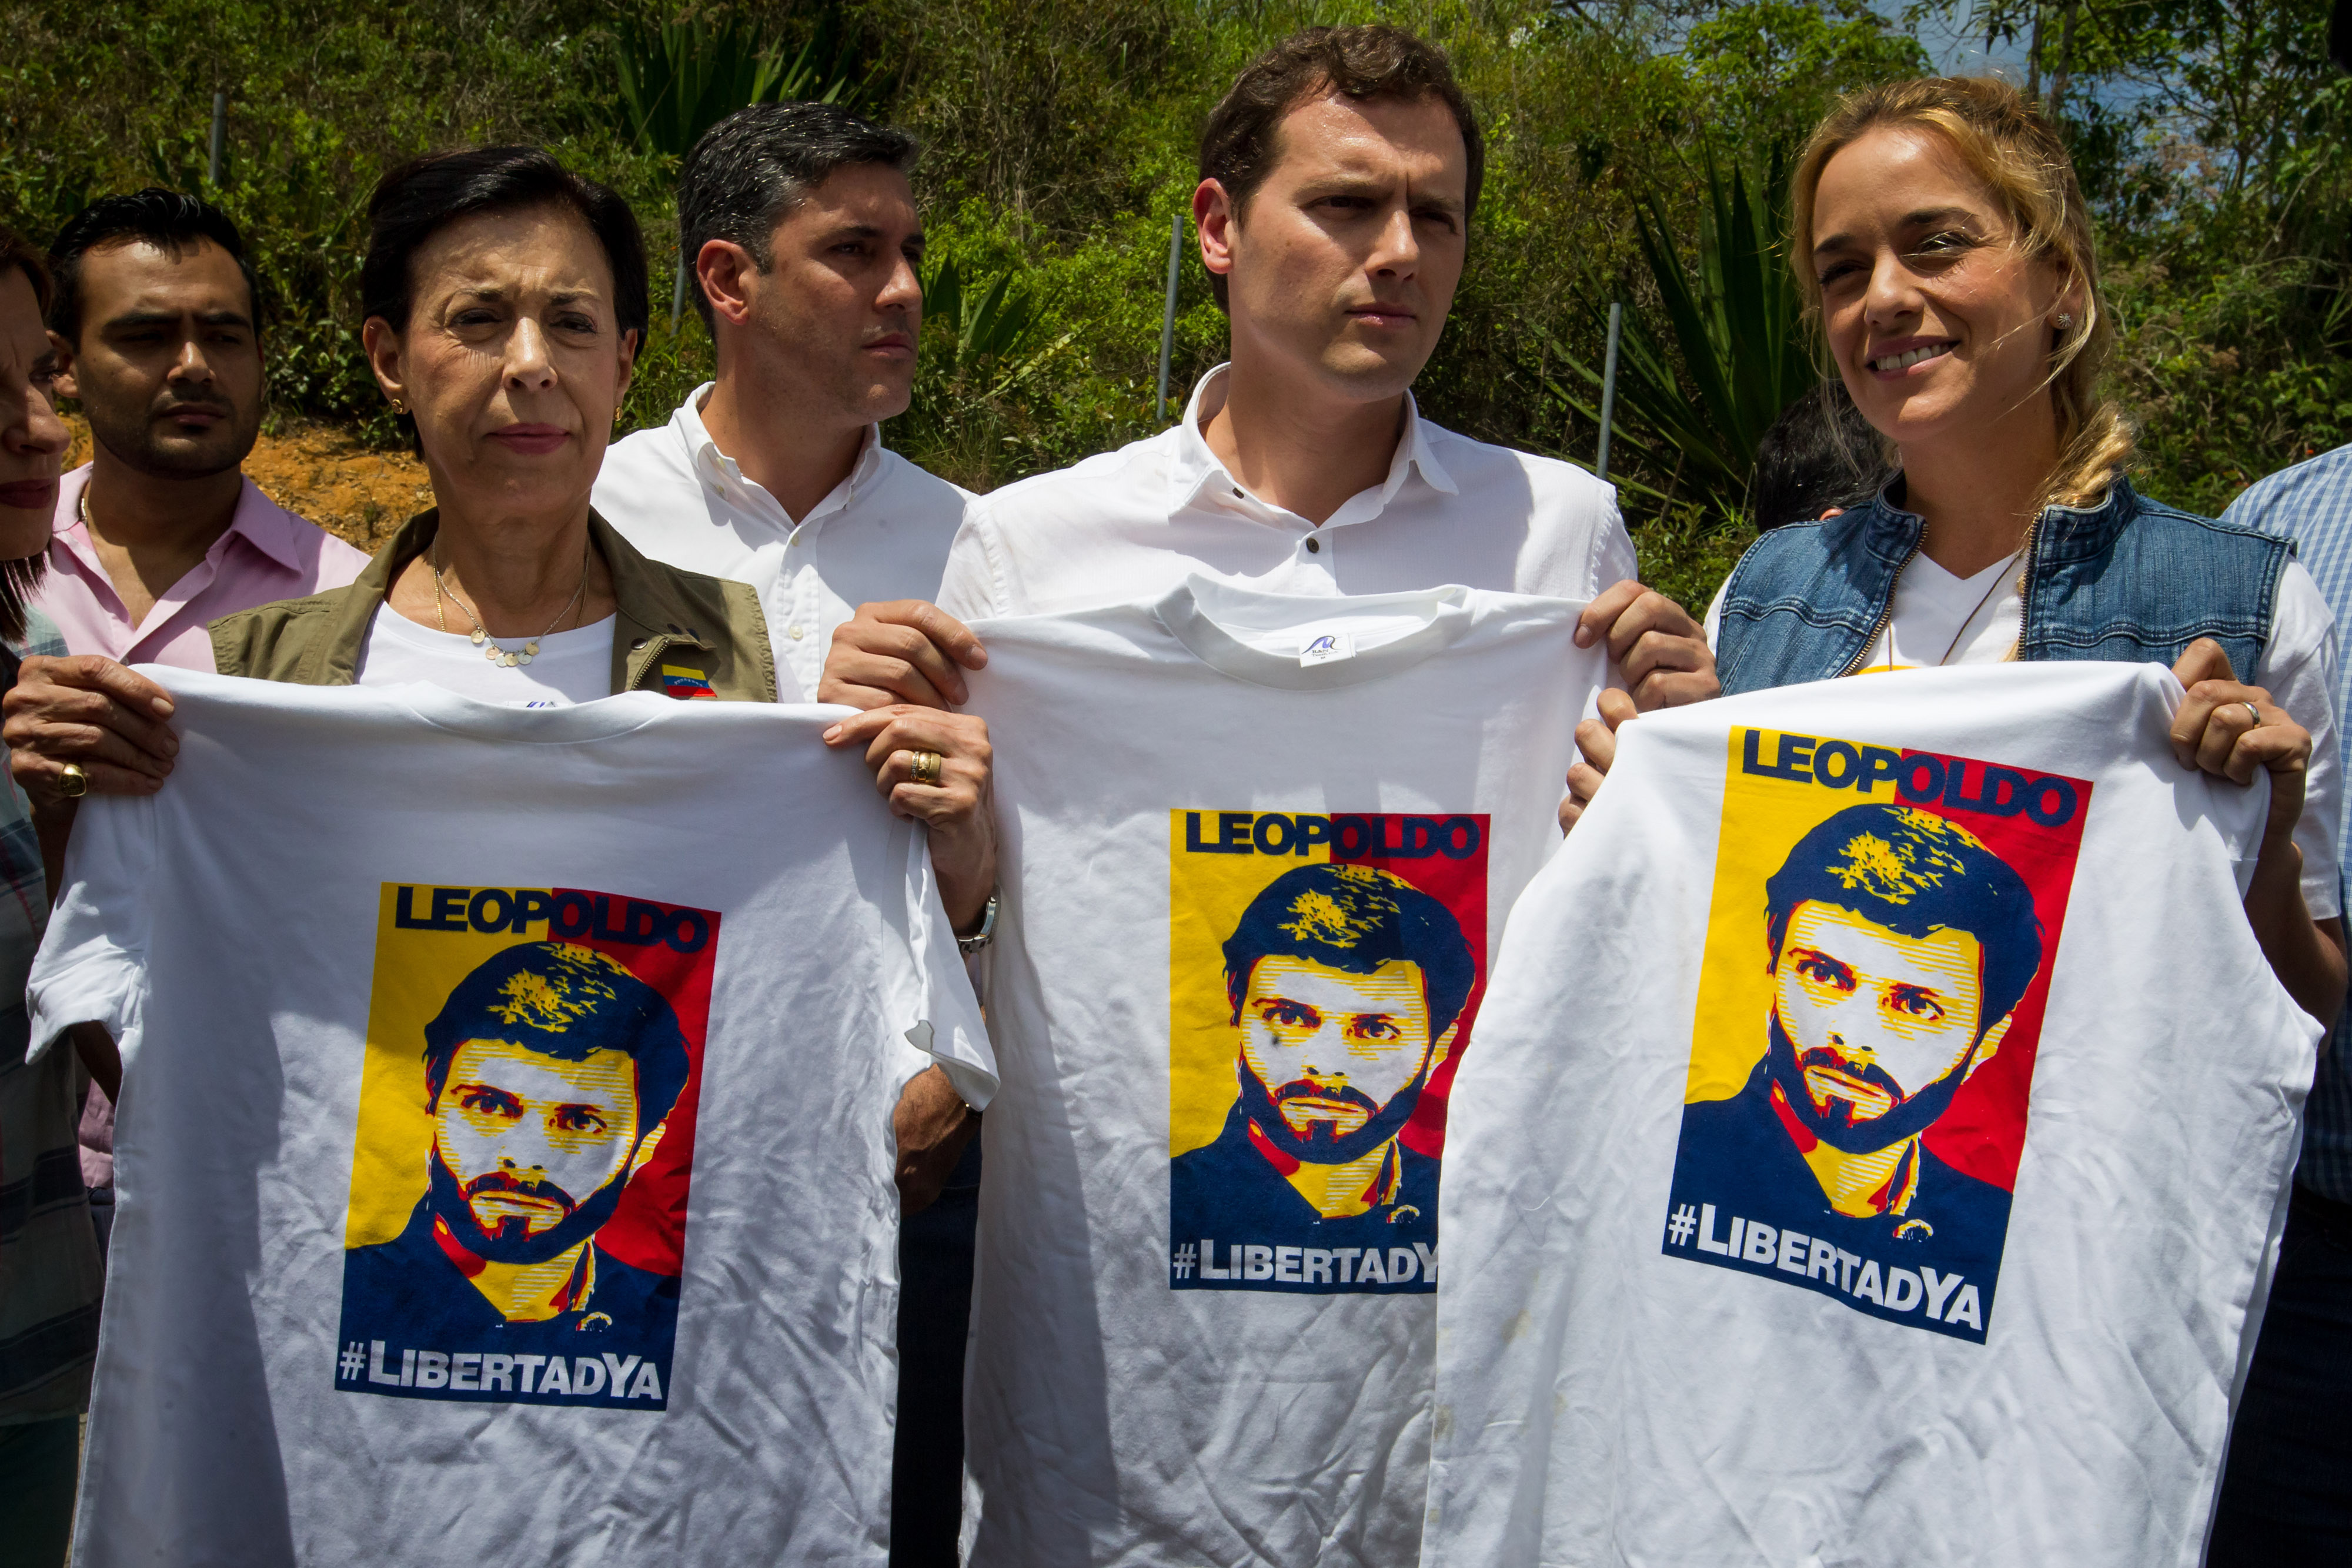 El líder del partido español Ciudadanos (liberal), Albert Rivera (c), posa sosteniendo camisetas con la imagen del dirigente opositor venezolano Leopoldo López acompañado por la madre de Leopoldo López, María Antonieta de López (2-i), y la esposa de Leopo